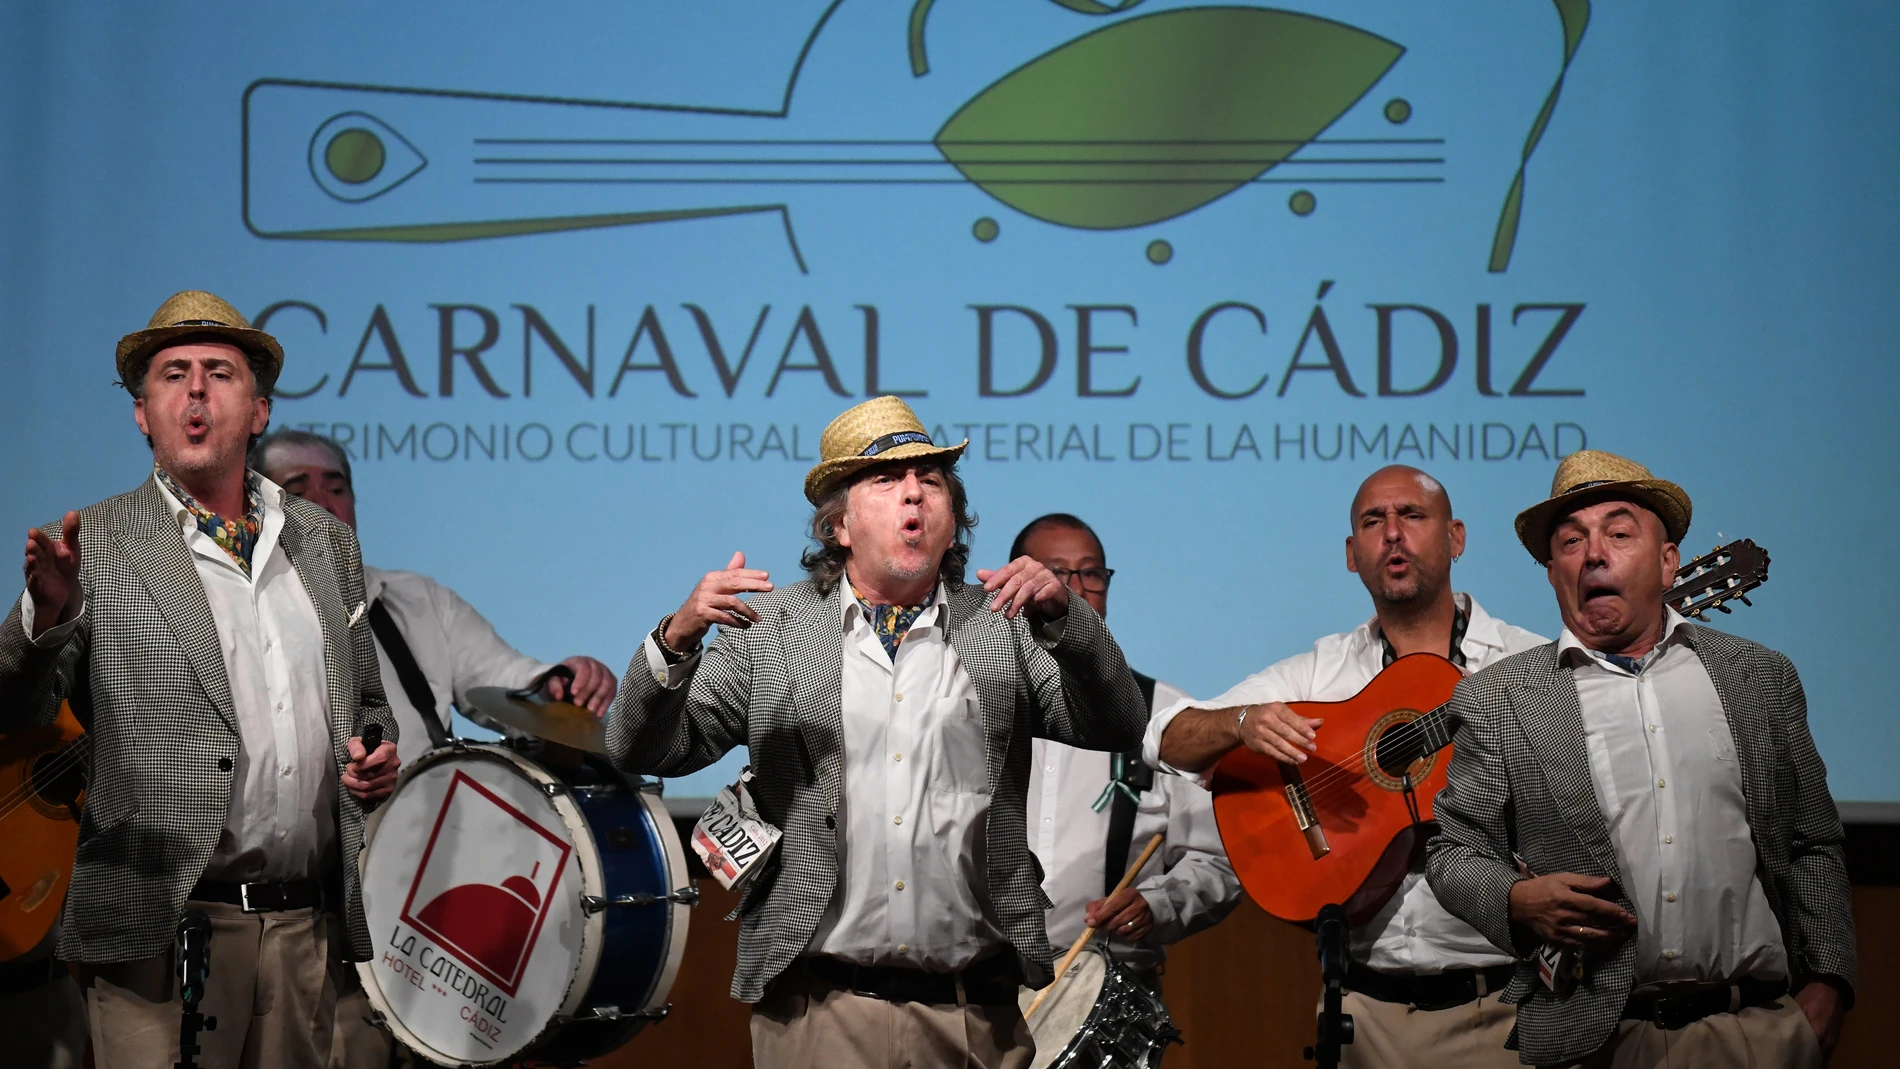 La chirigota del Selu, durante la presentación de la candidatura del Carnaval de Cádiz para su inclusión en la Lista Representativa del Patrimonio Cultural Inmaterial de la Humanidad de la Unesco